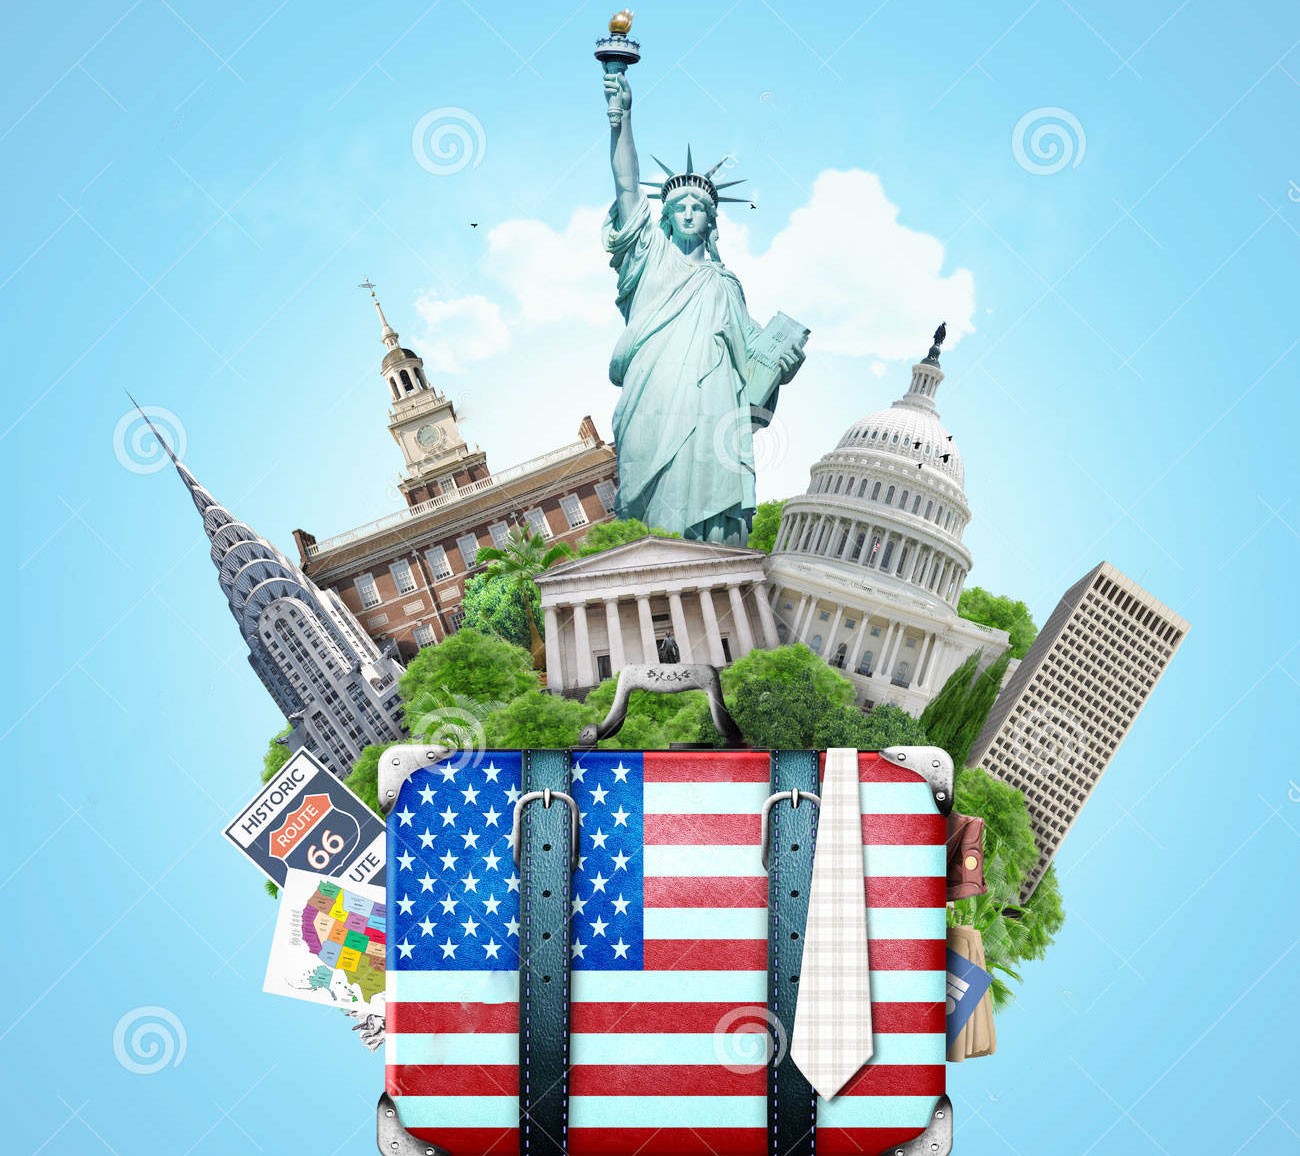 giấy tờ cần thiết khi đi phỏng vấn visa Mỹ - sứ sở cờ hoa luôn chào đón bạn